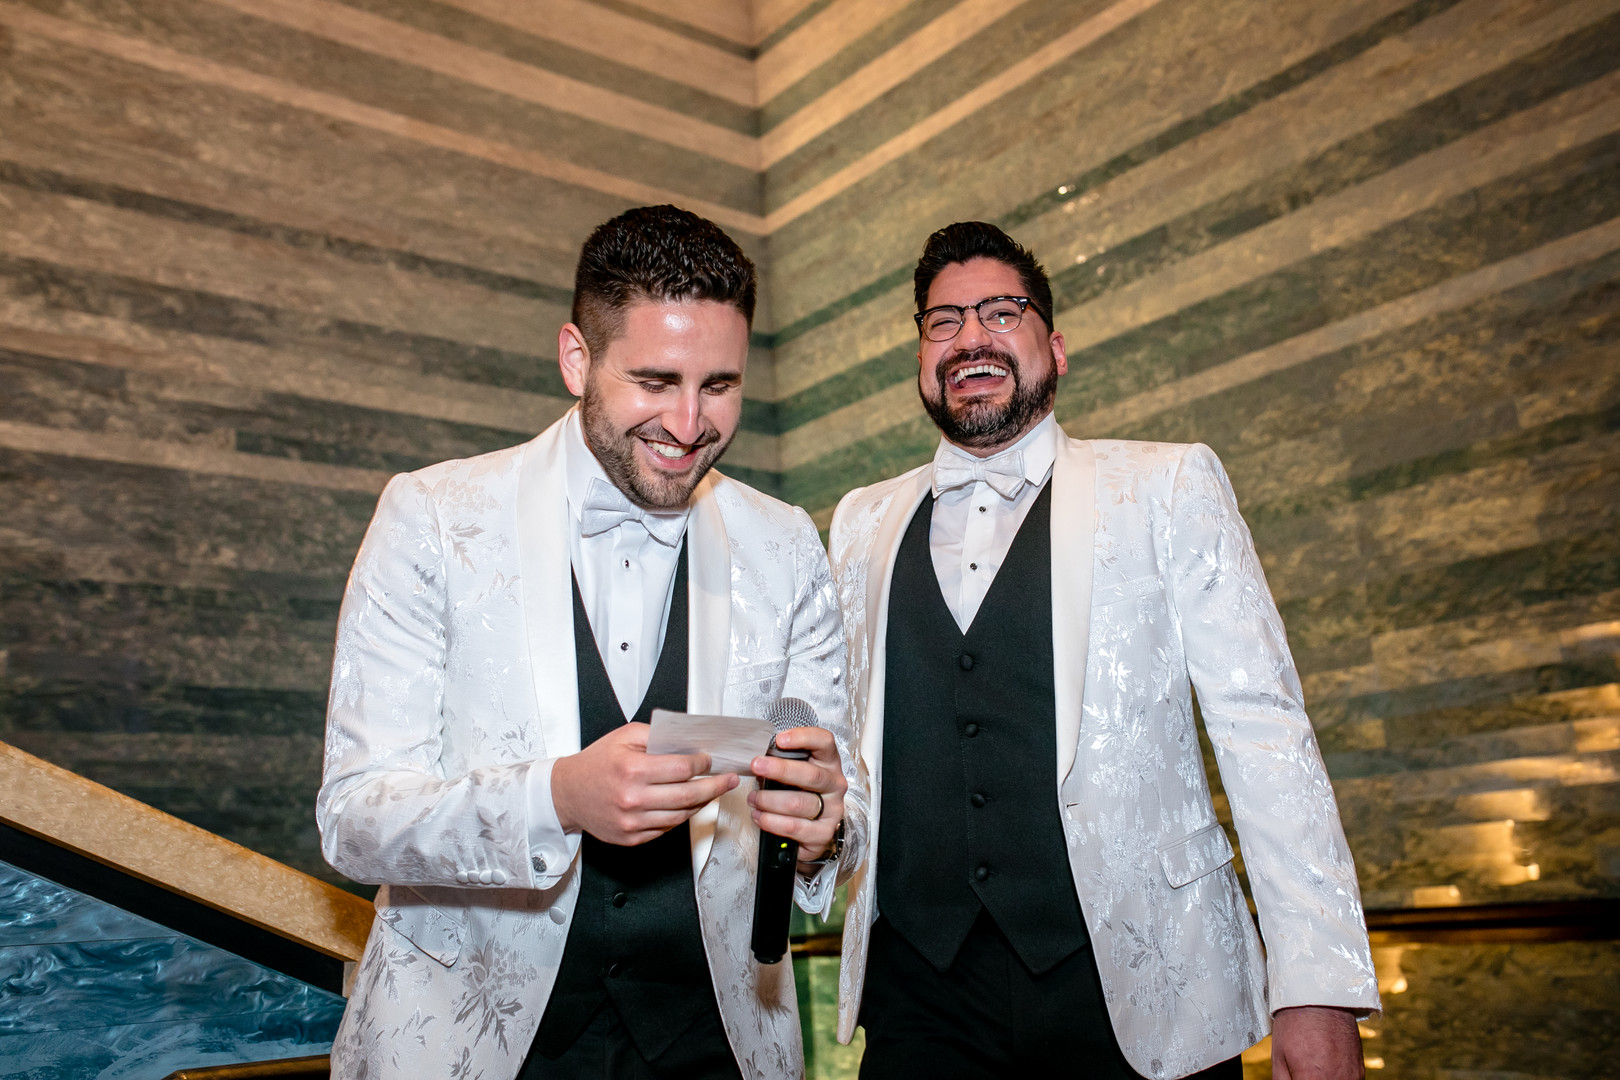 Black tie wedding at the Blanton Museum in Austin, Texas LGBTQ+ weddings two grooms luxury elegant toasts